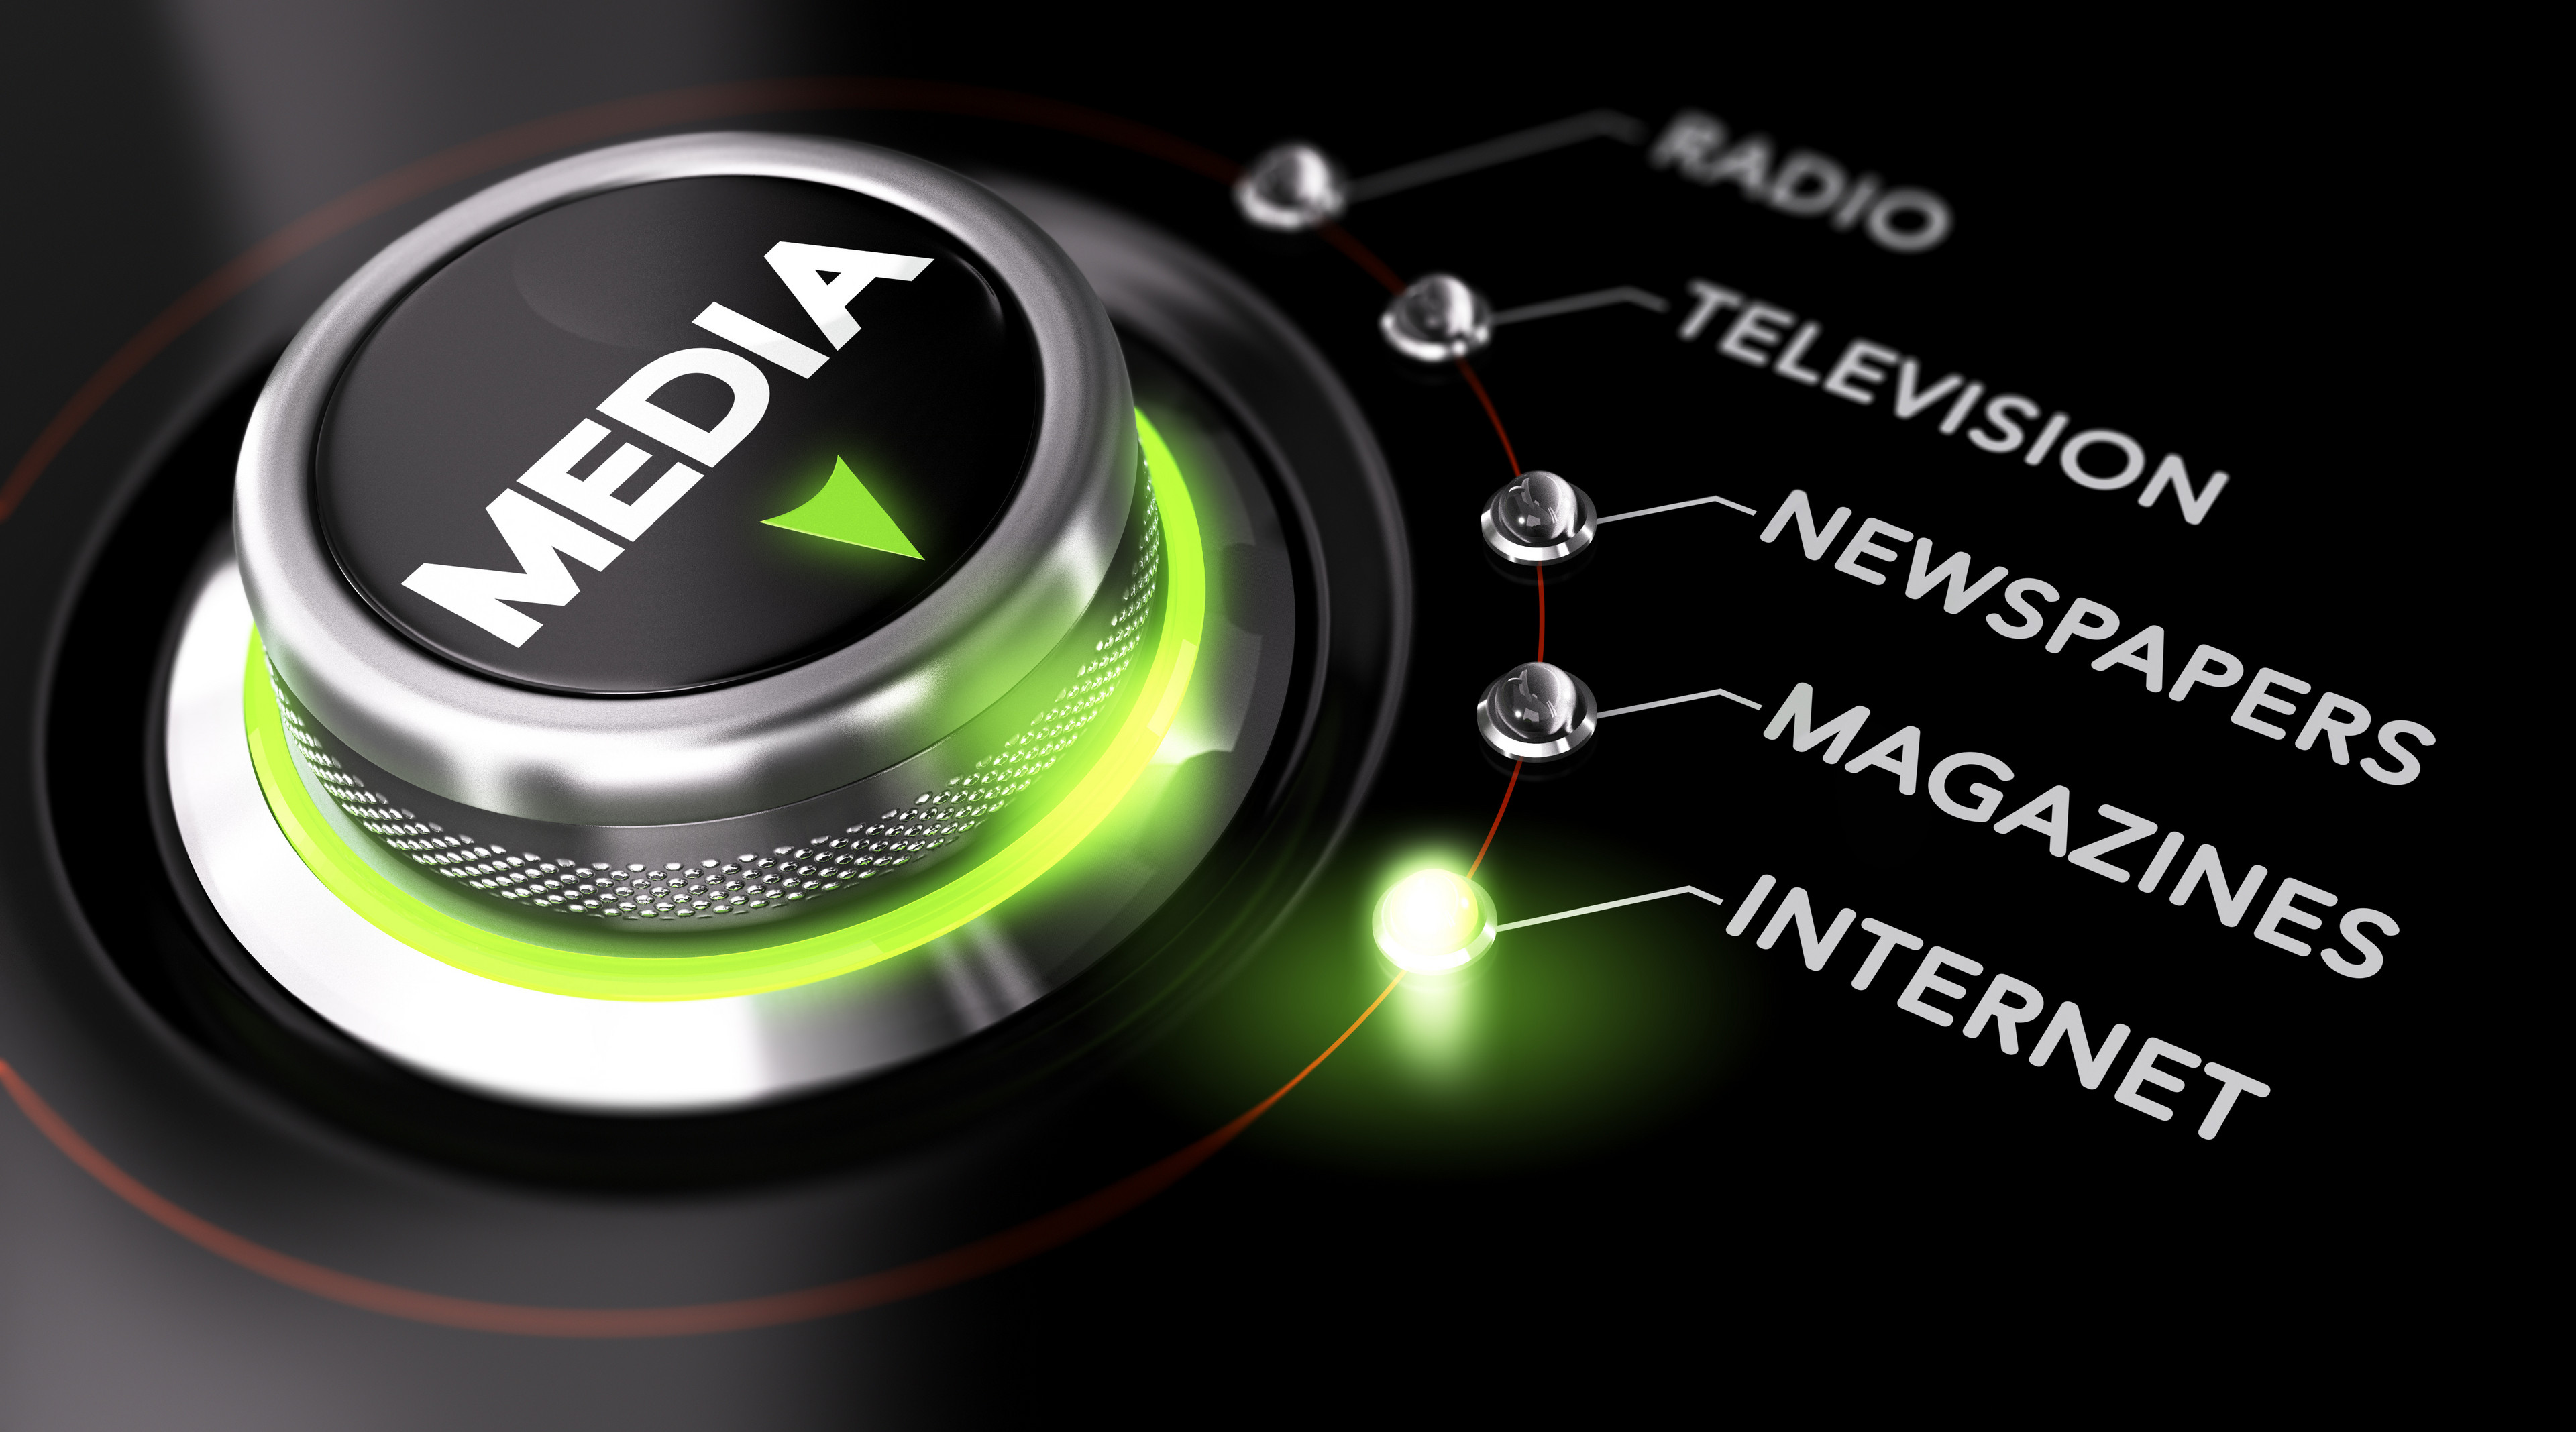 beleuchteter Schaltknopf, beschriftet mit dem Wort Media, zeigt eine Auswahl zwischen verschiedenen Medien-Bereichen